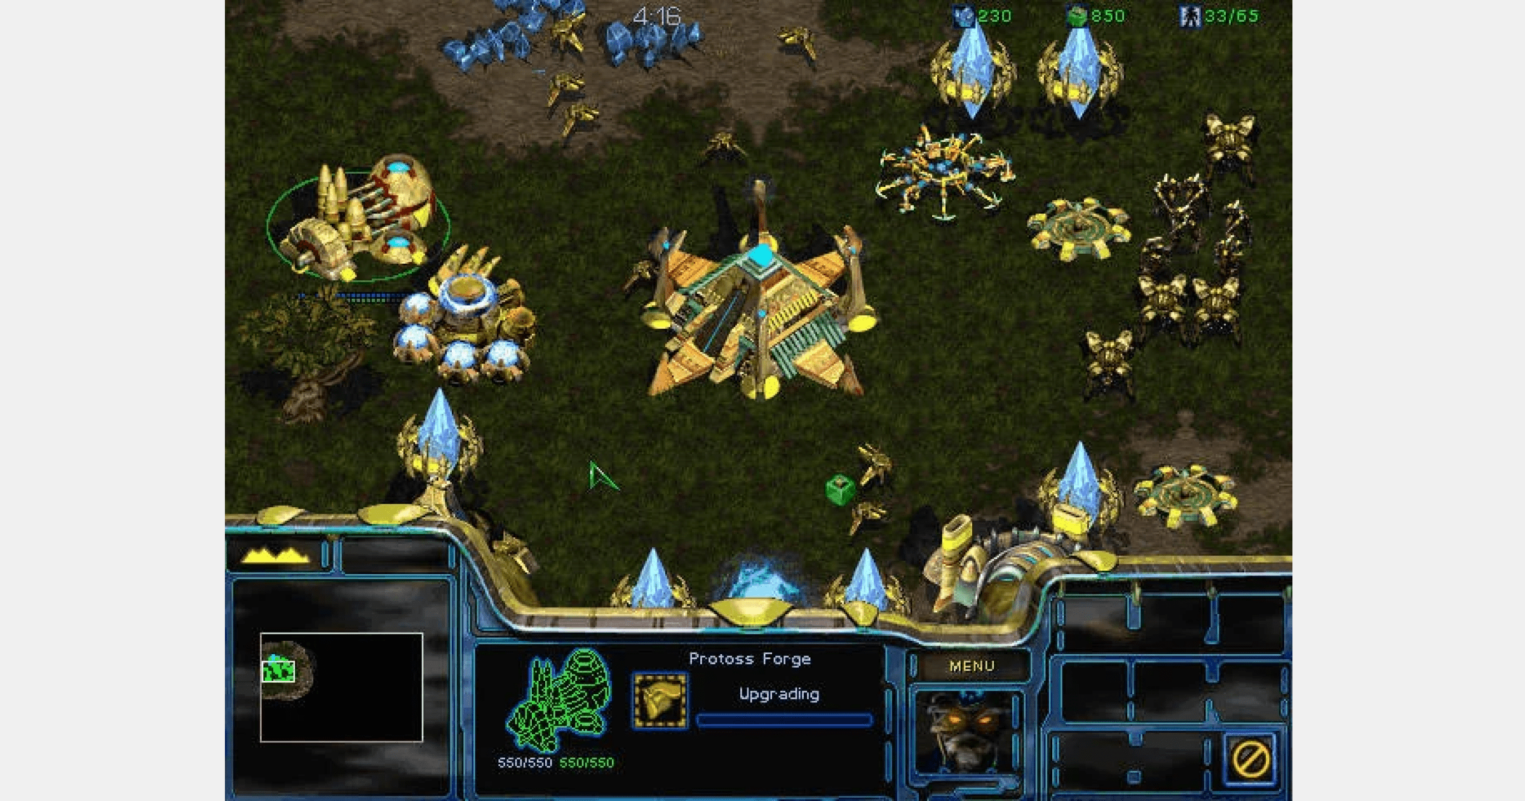 Скриншот из игры «StarCraft» / 1998 год.